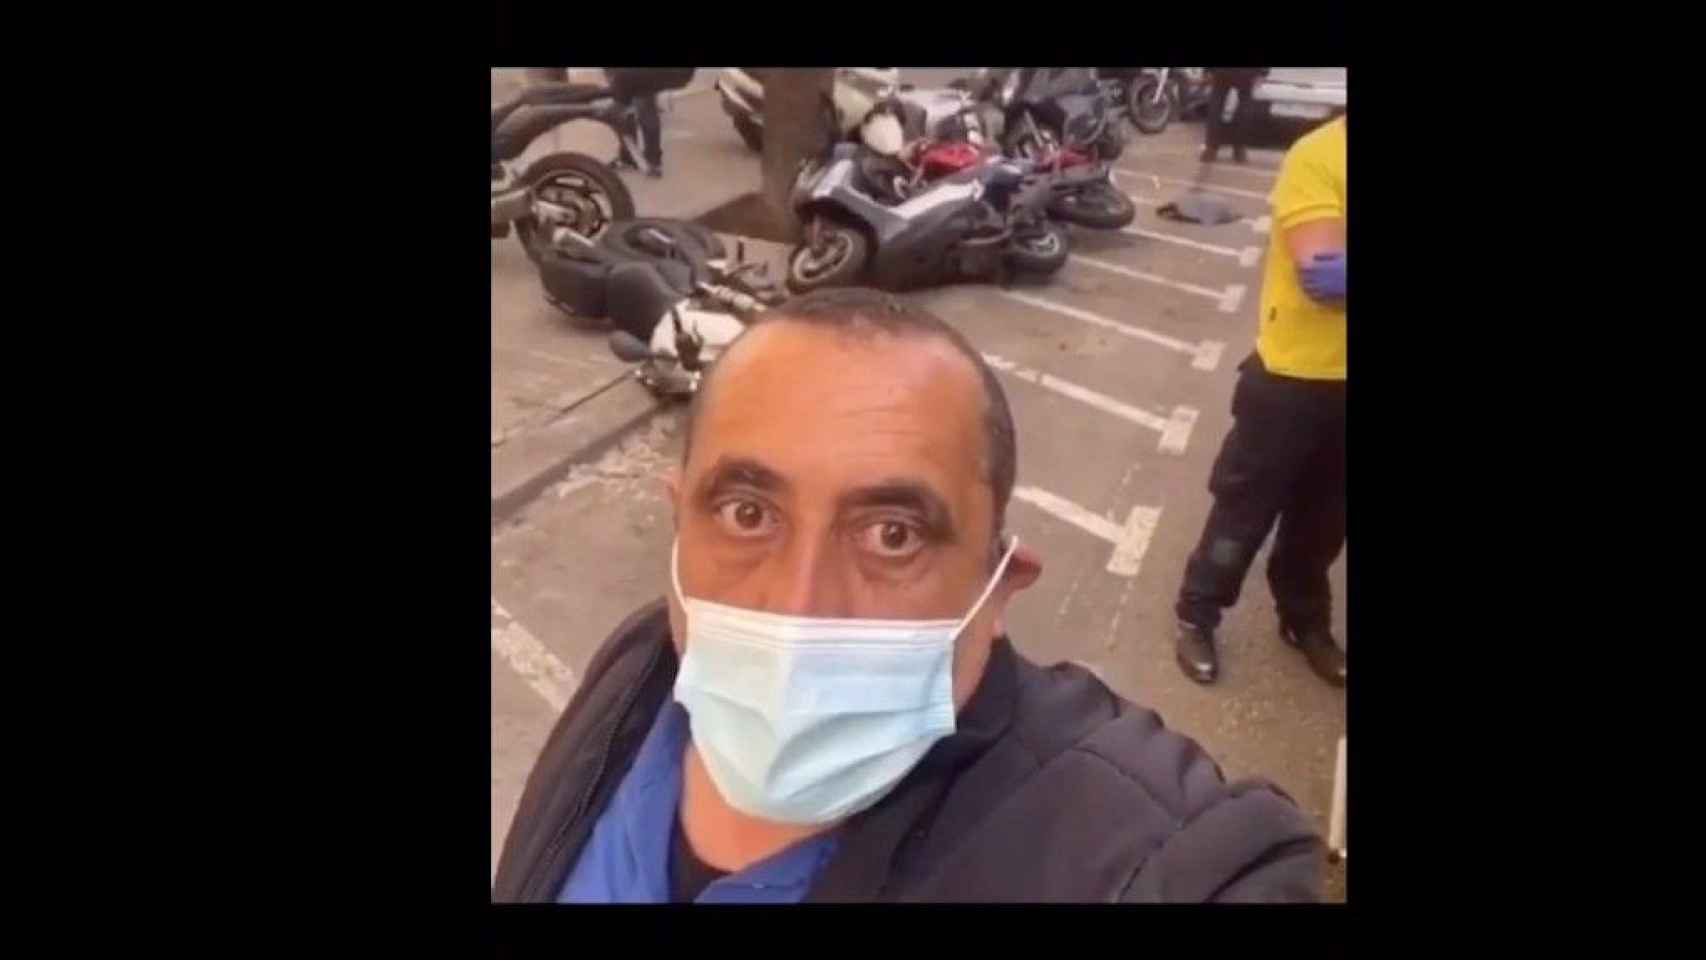 El hombre, en el vídeo, con algunas motos tiradas detrás